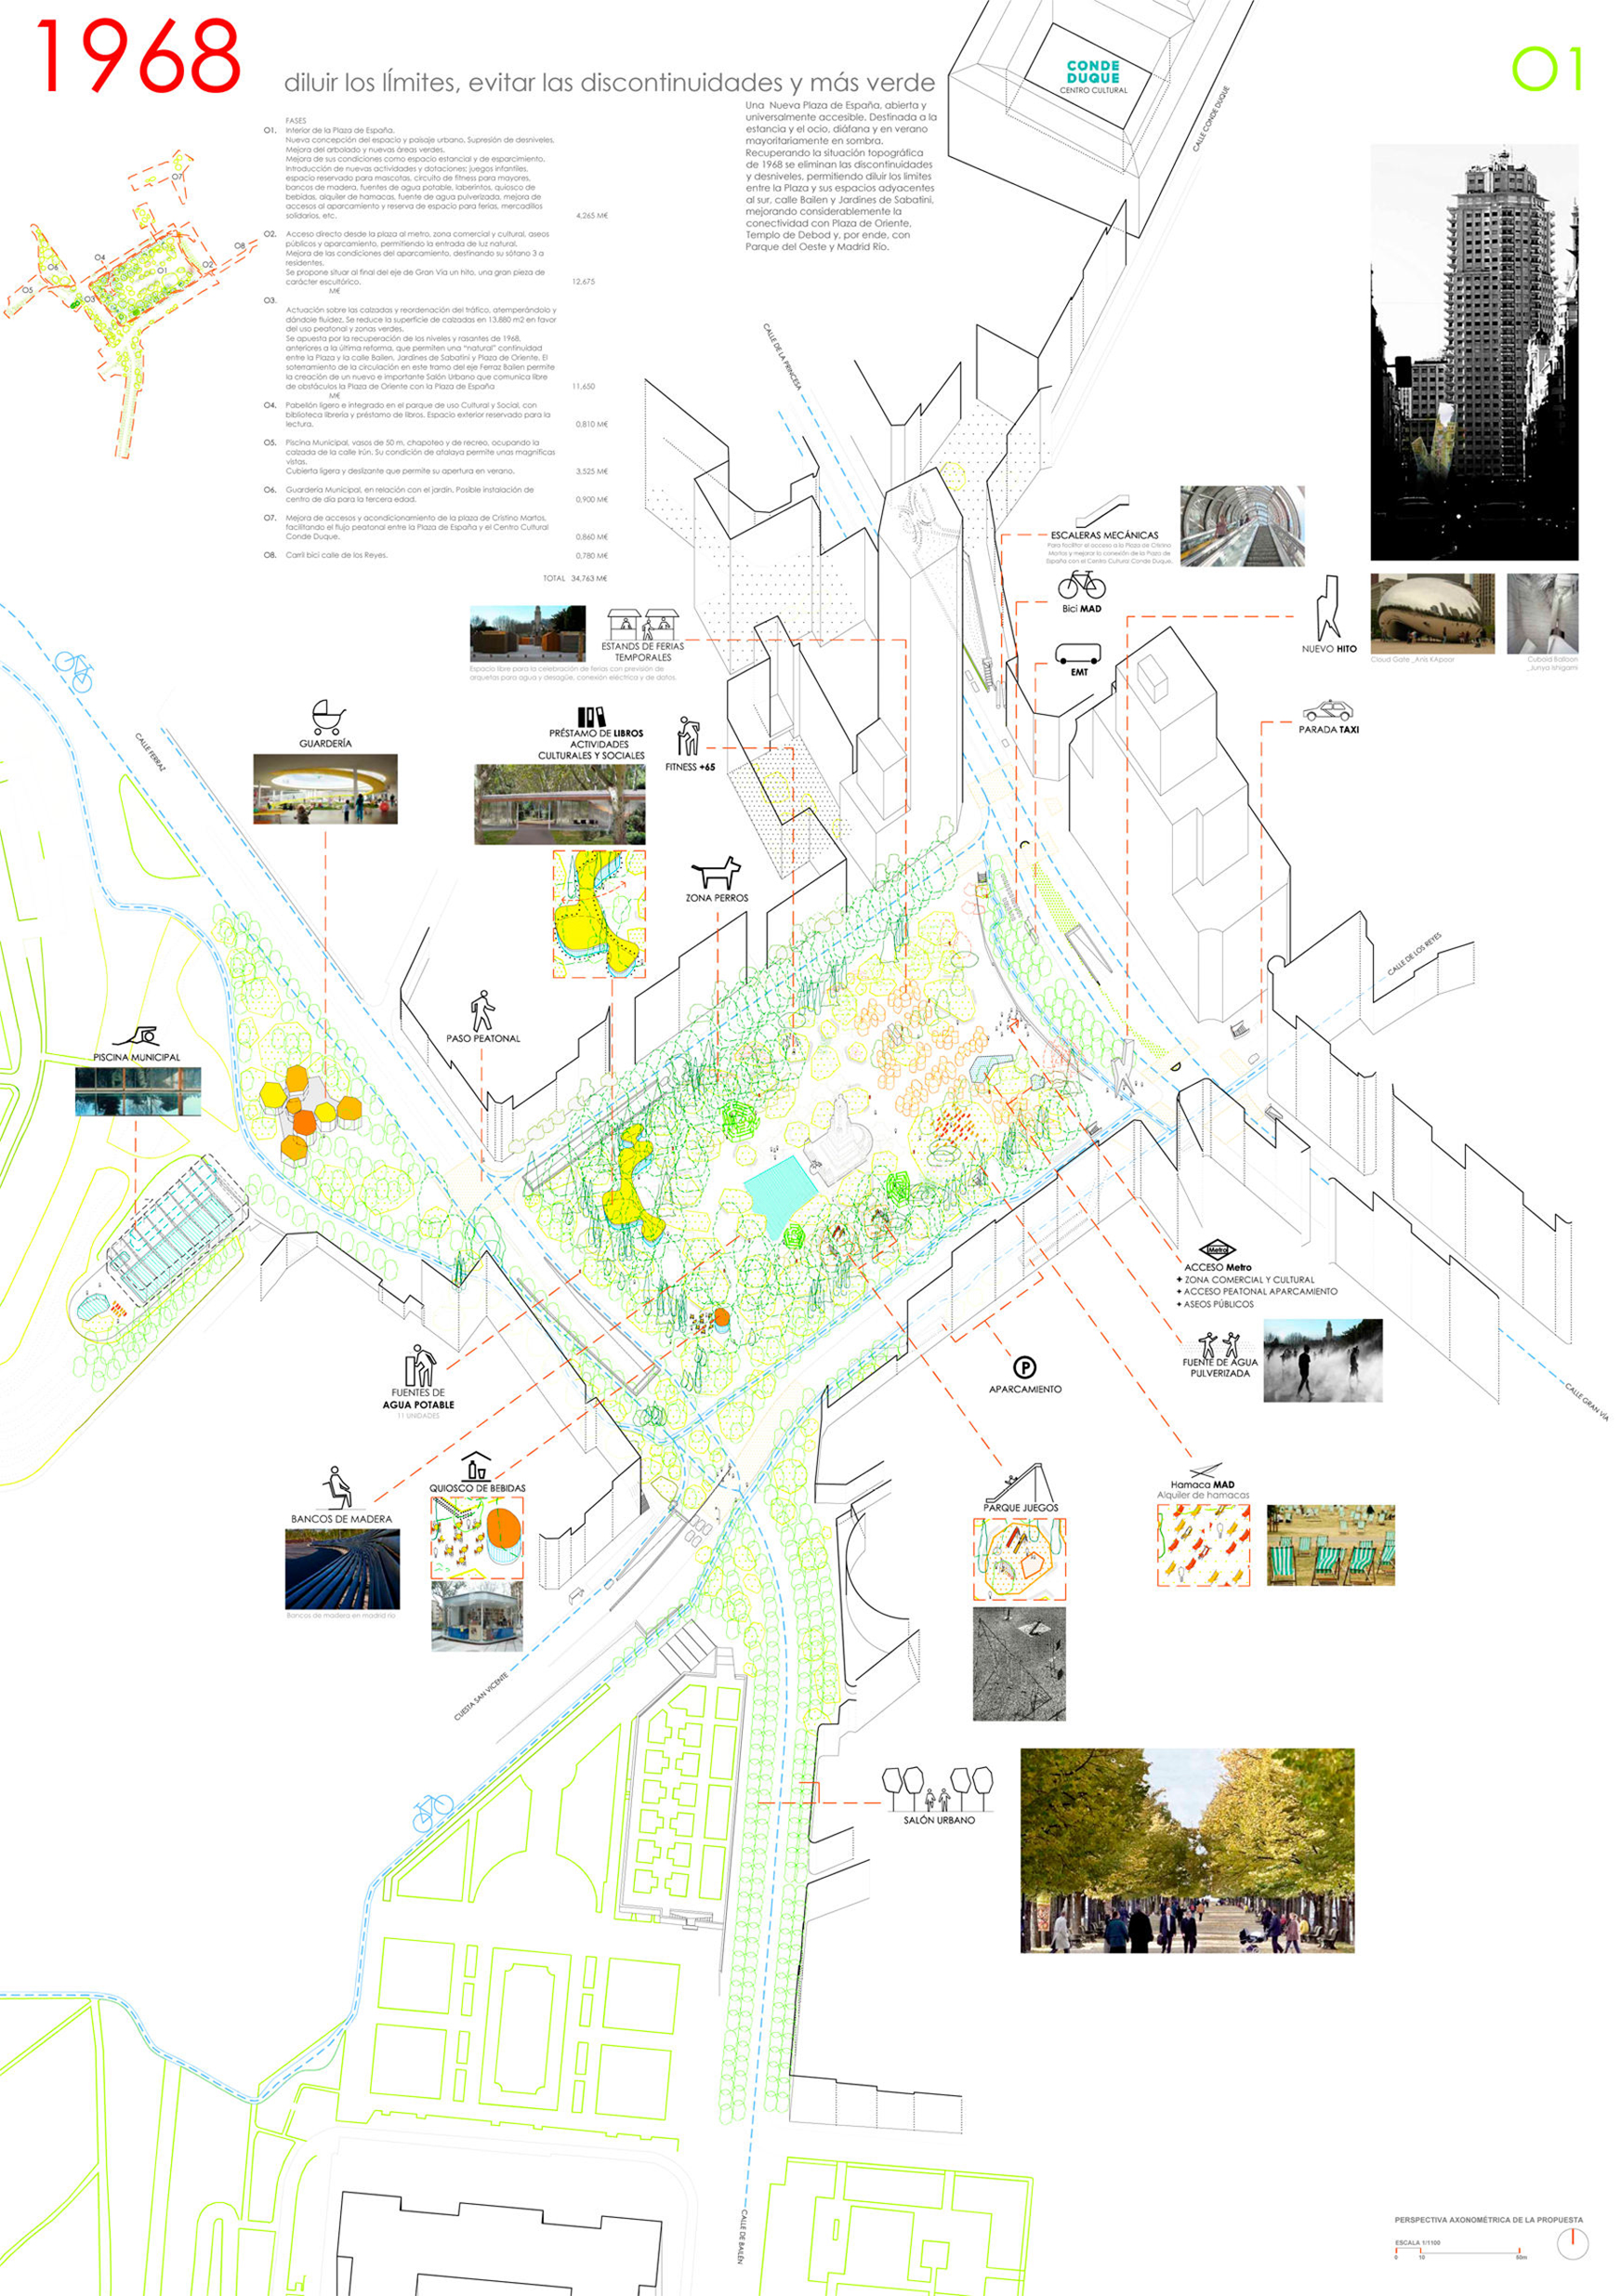 Proyecto 72 para la Remodelación de Plaza España: 1968 diluir los límites, evitar las discontinuidades y más verde